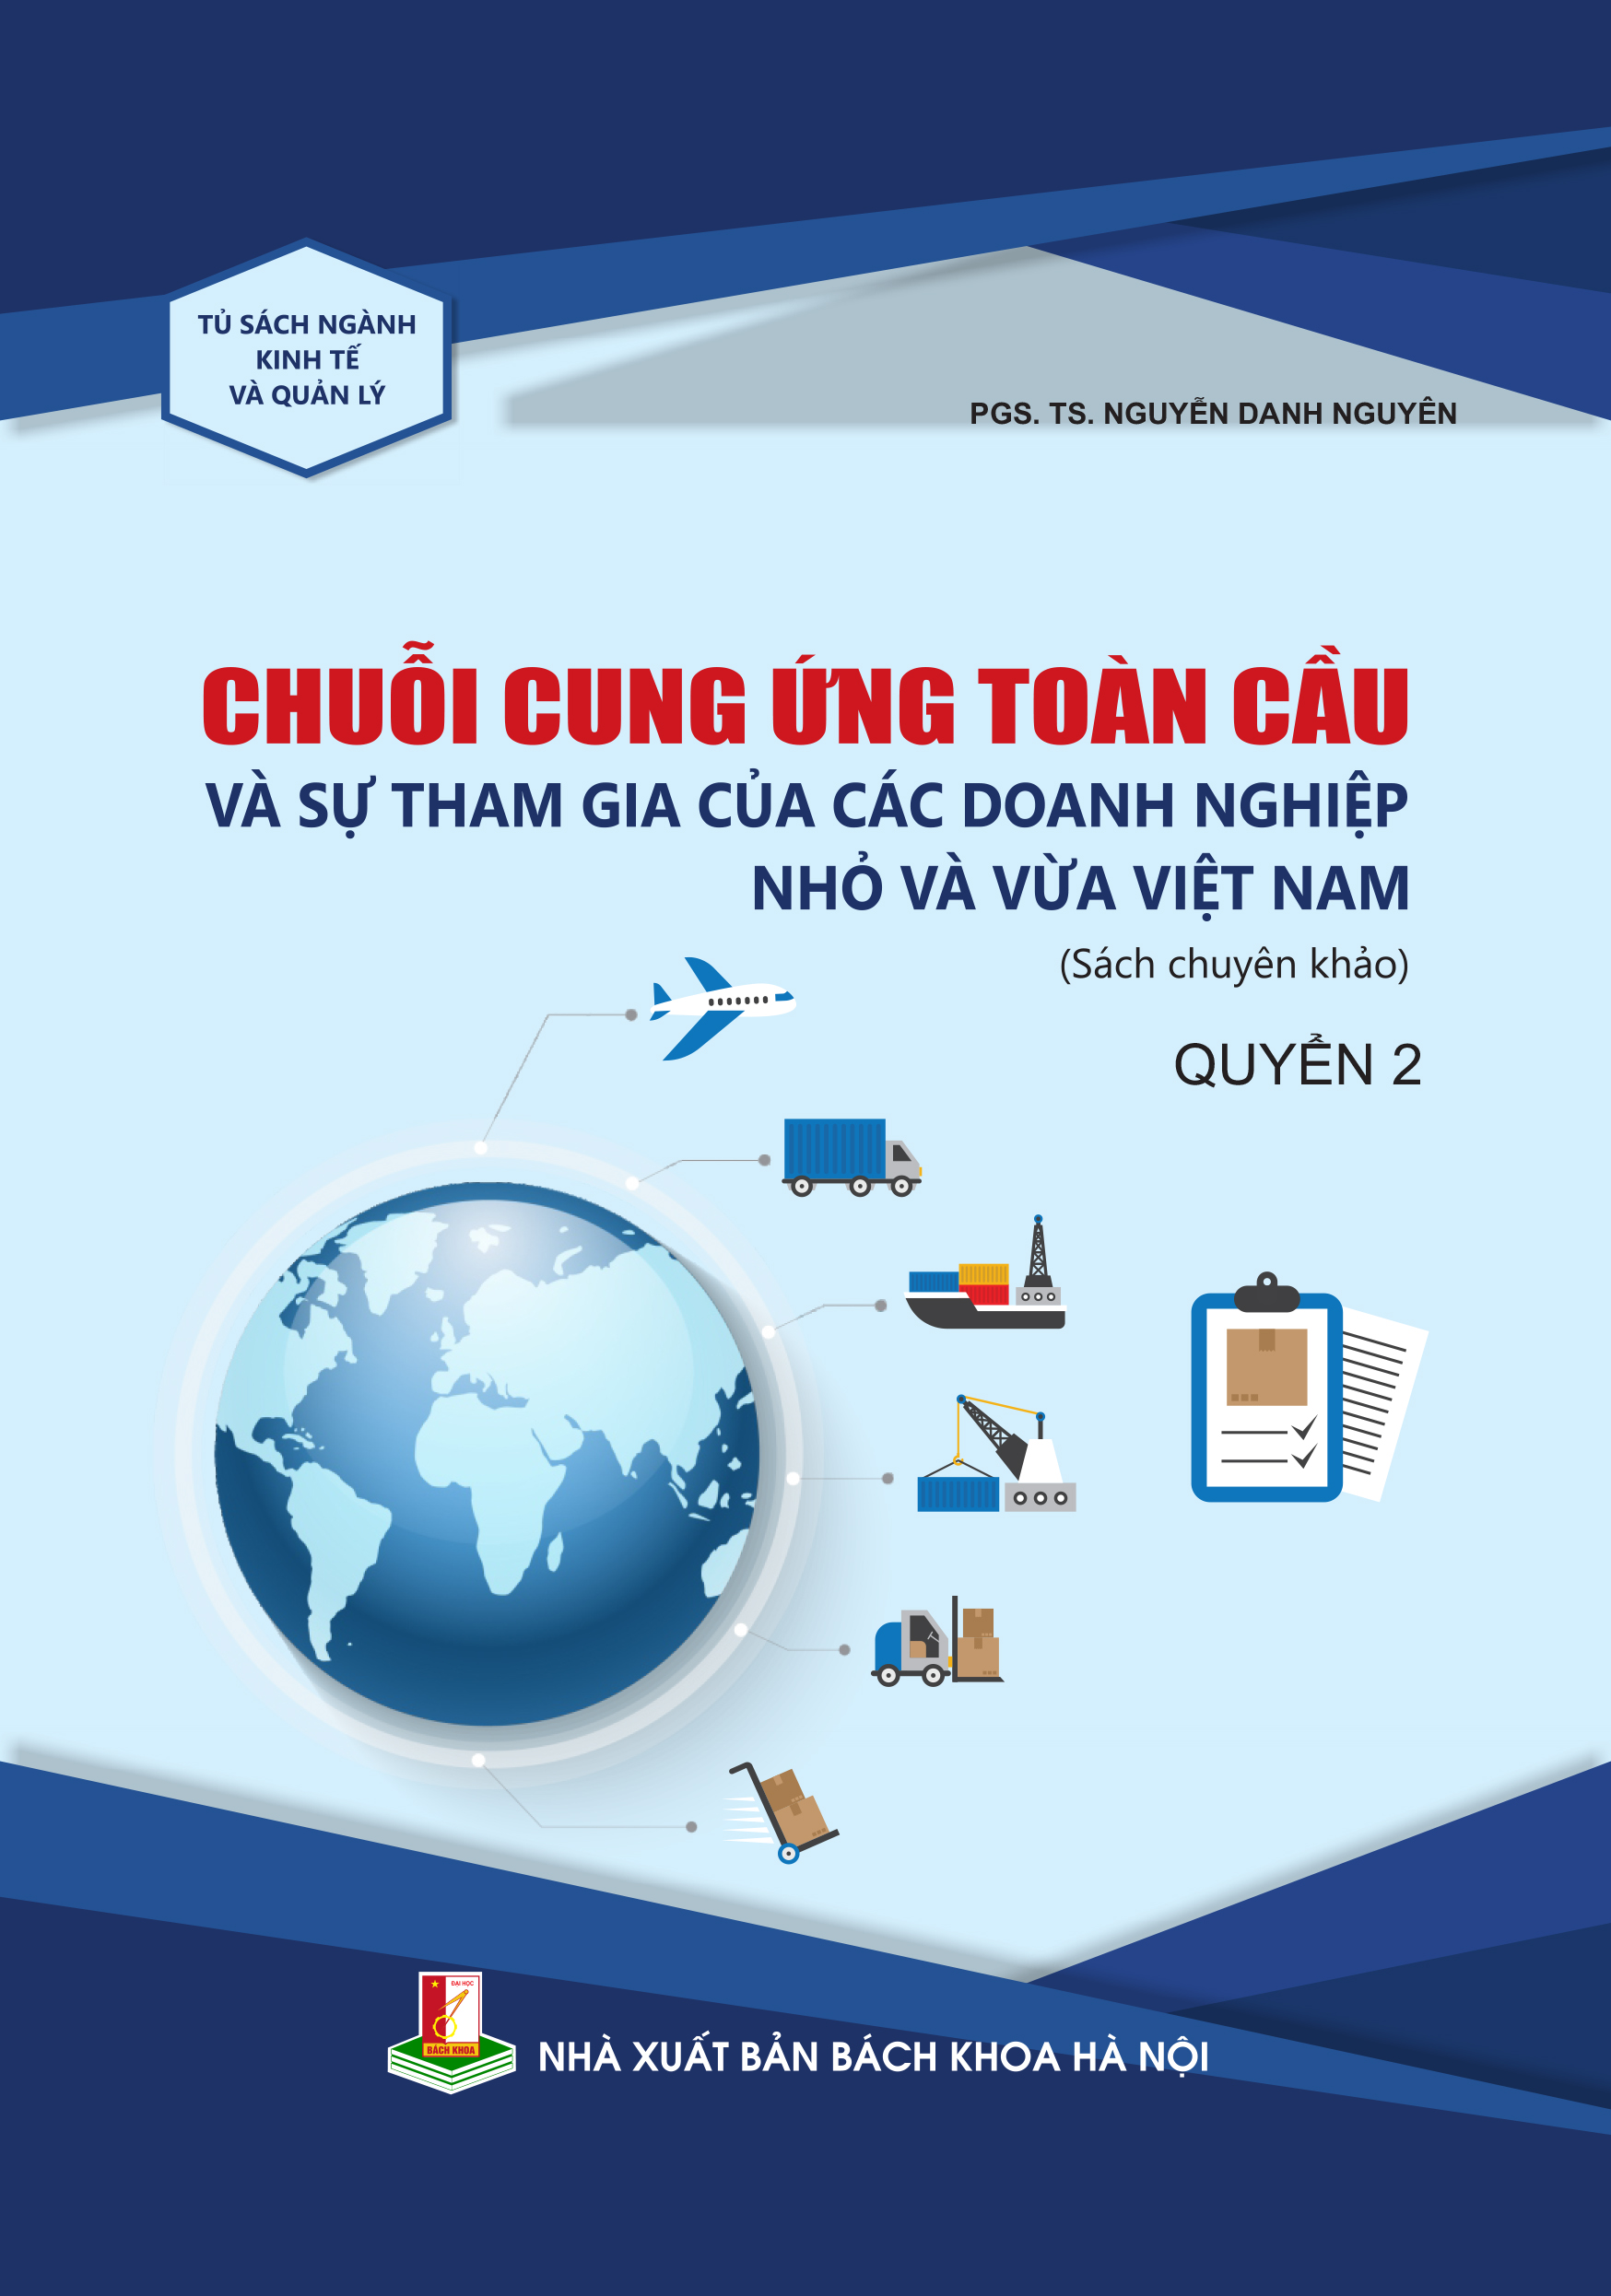 Chuỗi cung ứng toàn cầu và sự tham gia của các doanh nghiệp nhỏ và vừa Việt Nam - Quyển 2